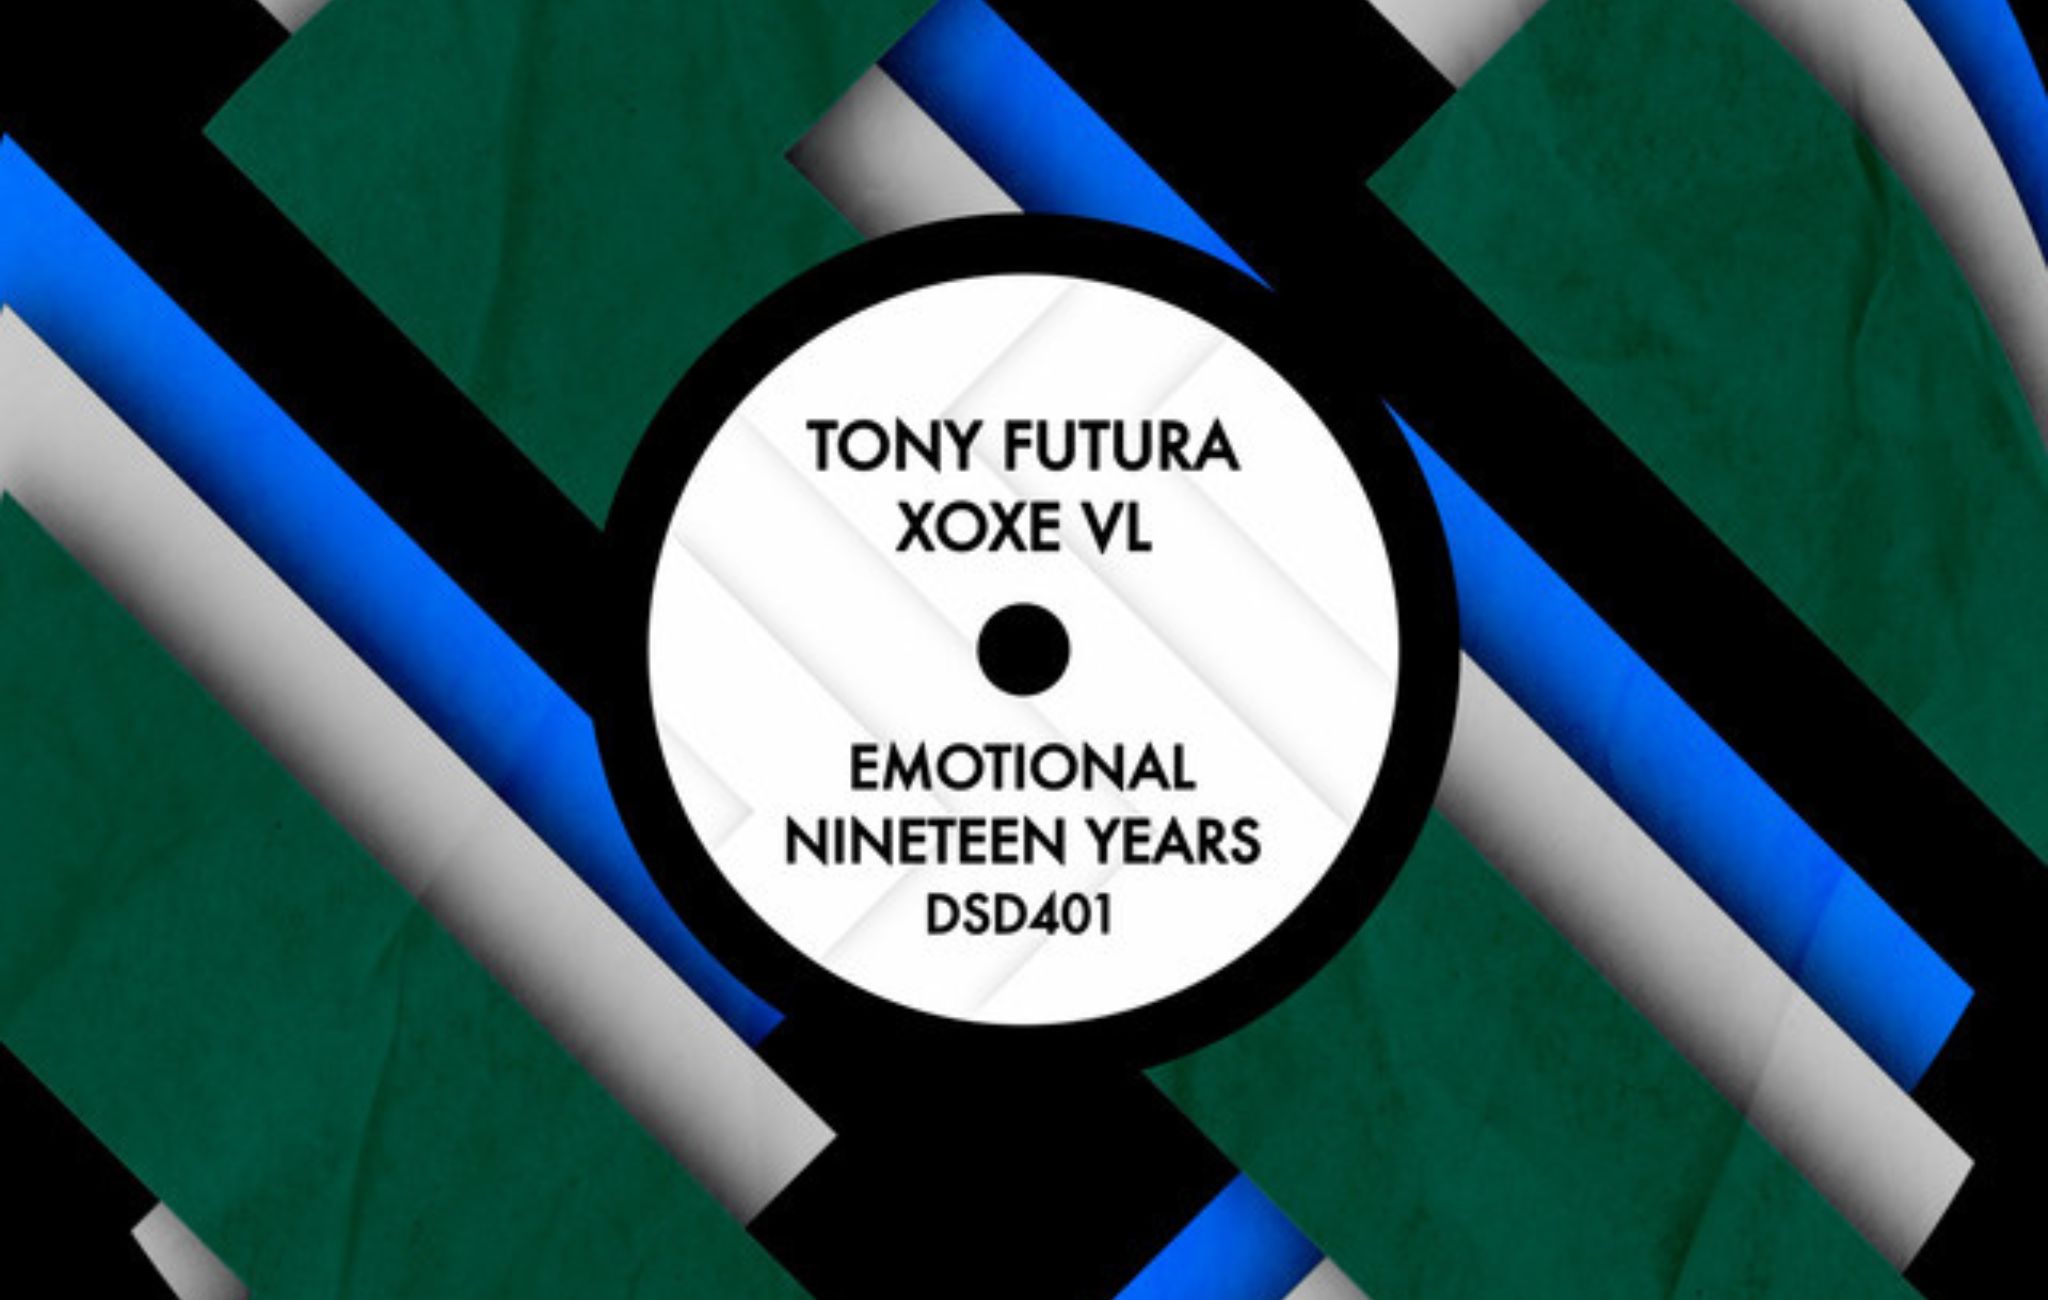 Tony Futura & XoXe VL – Emotional Nineteen Years.